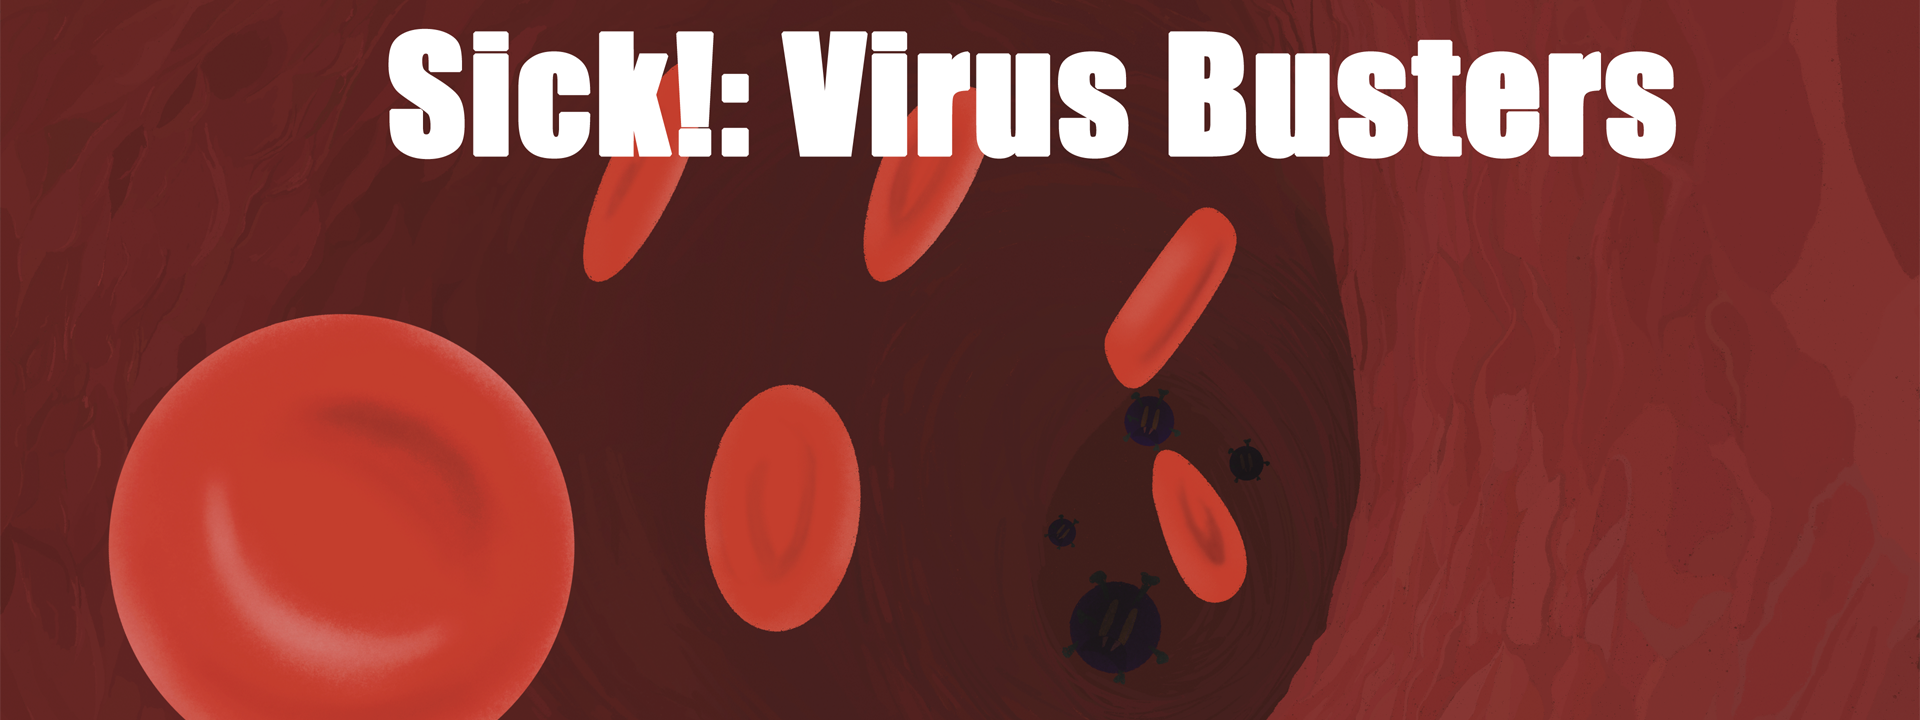 Sick!: Virus Busters